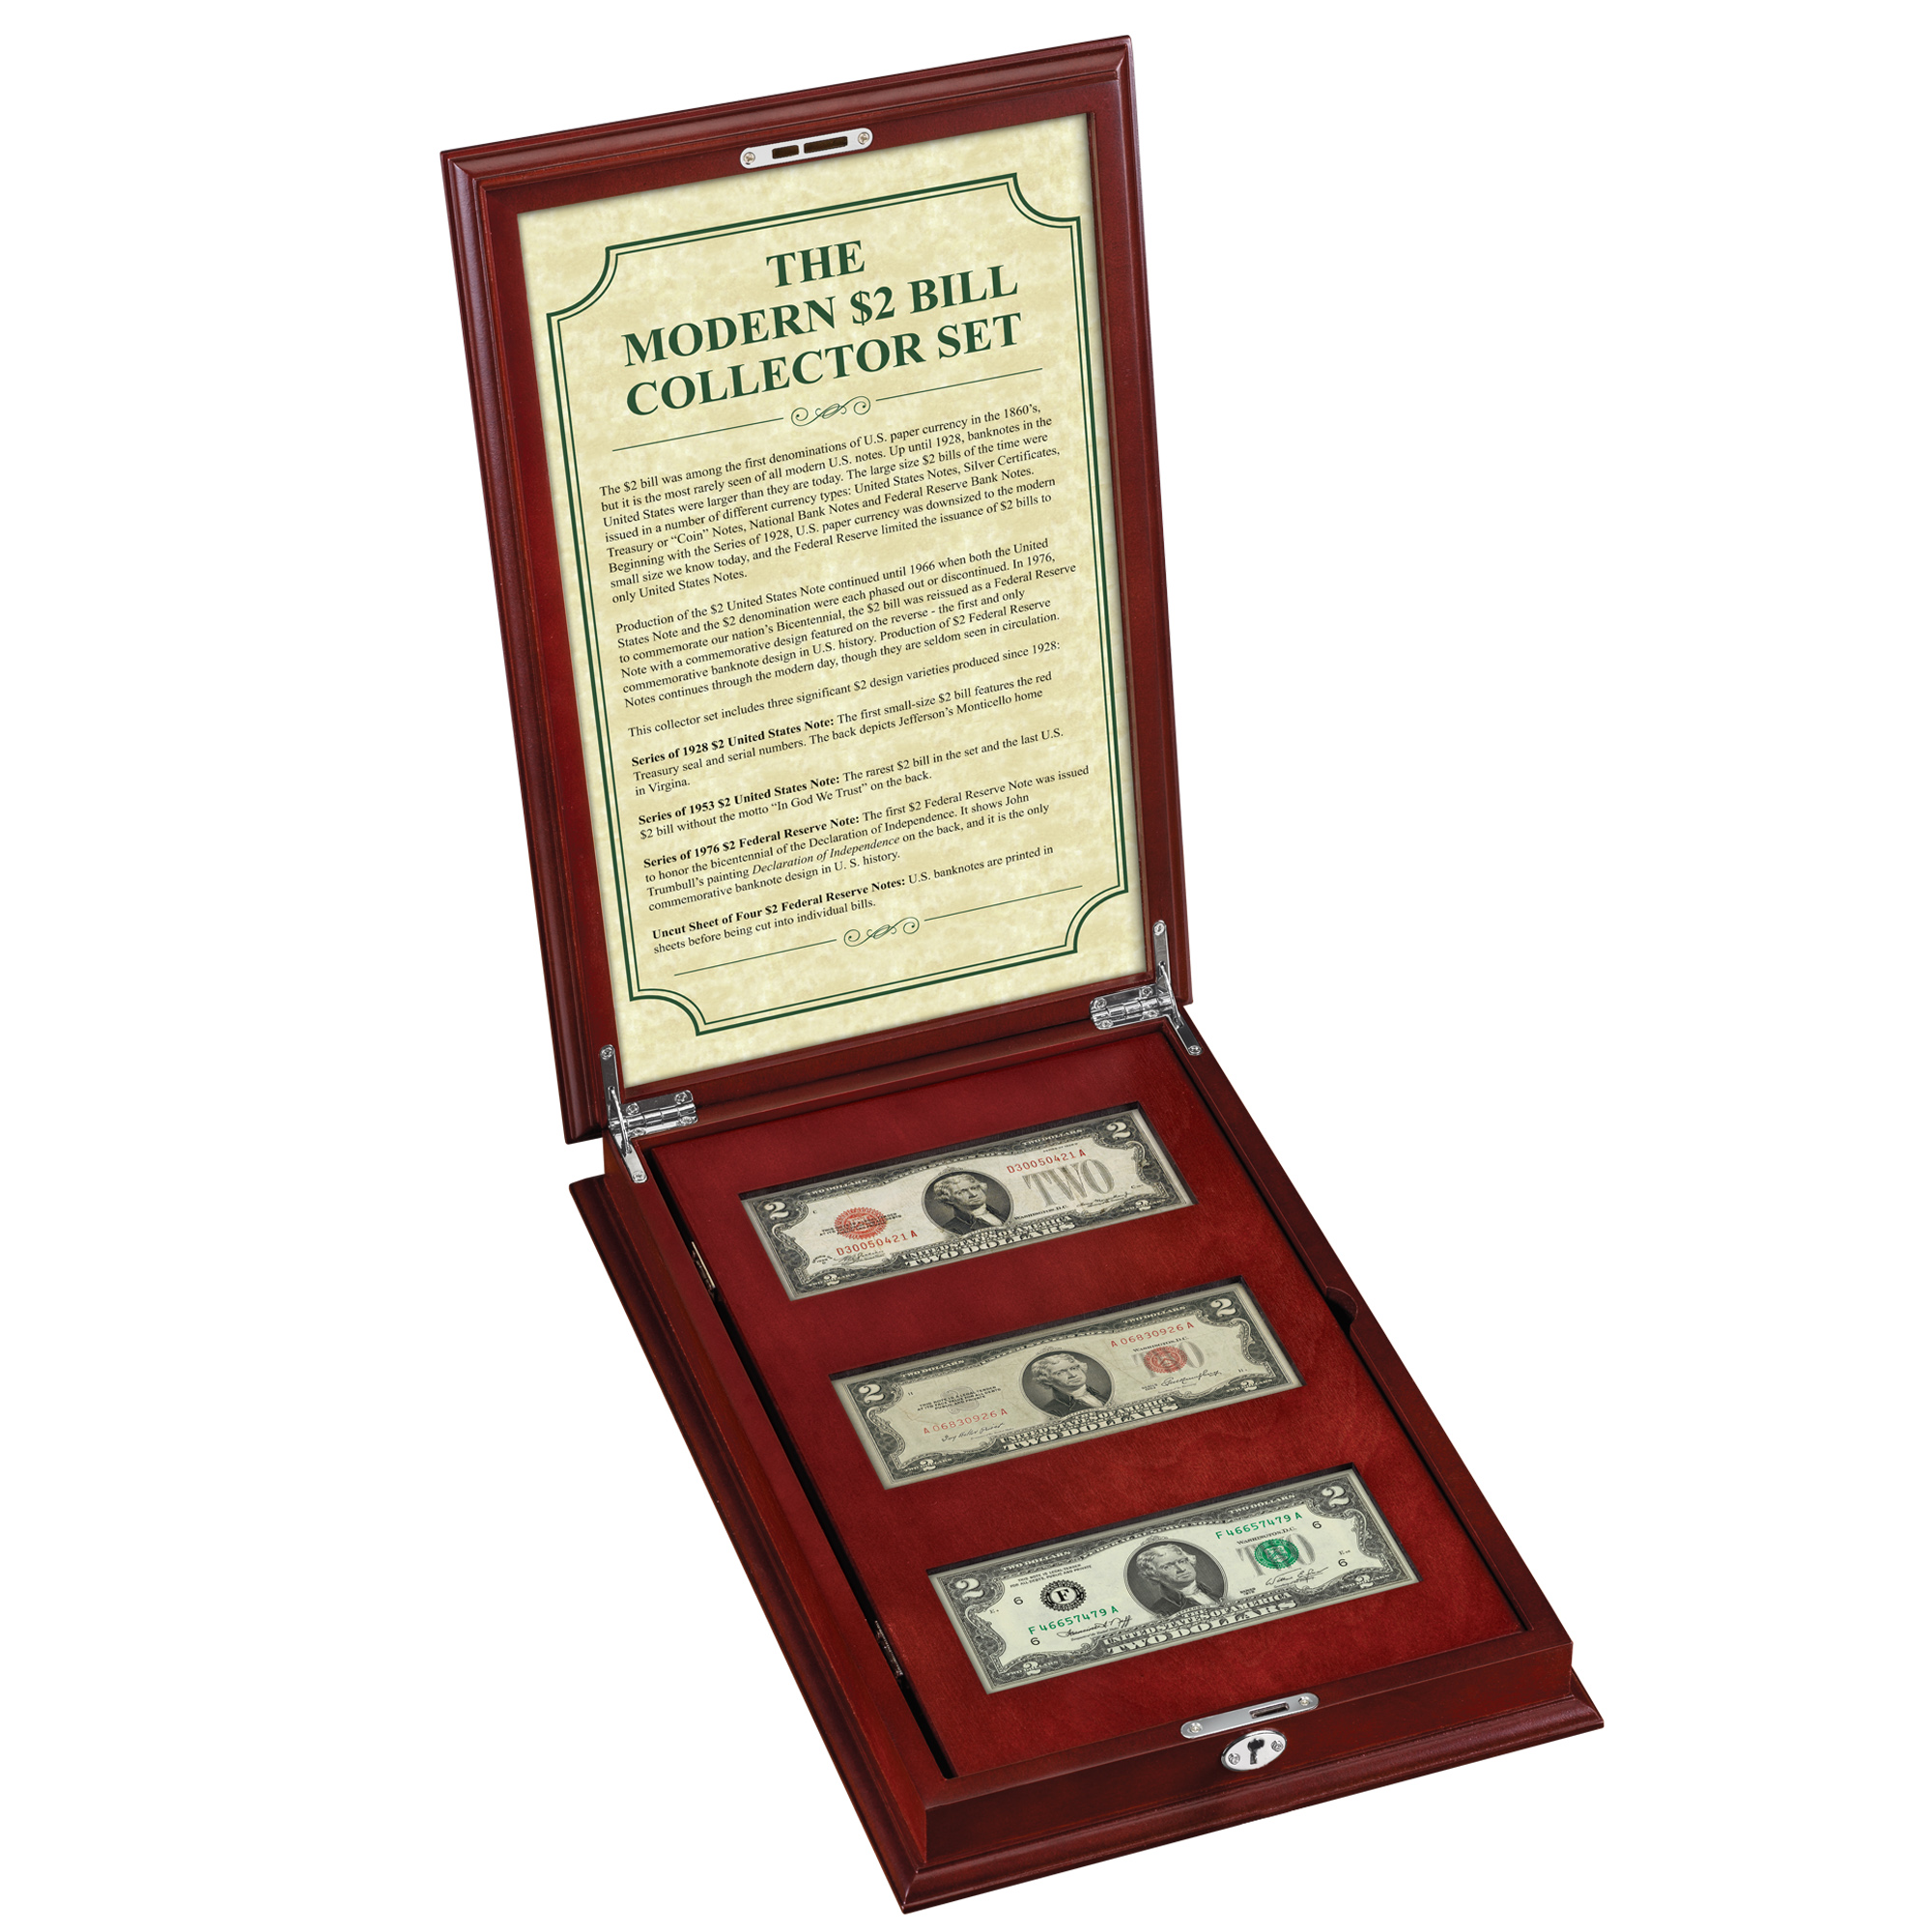 The Modern $2 Bill Collector Set